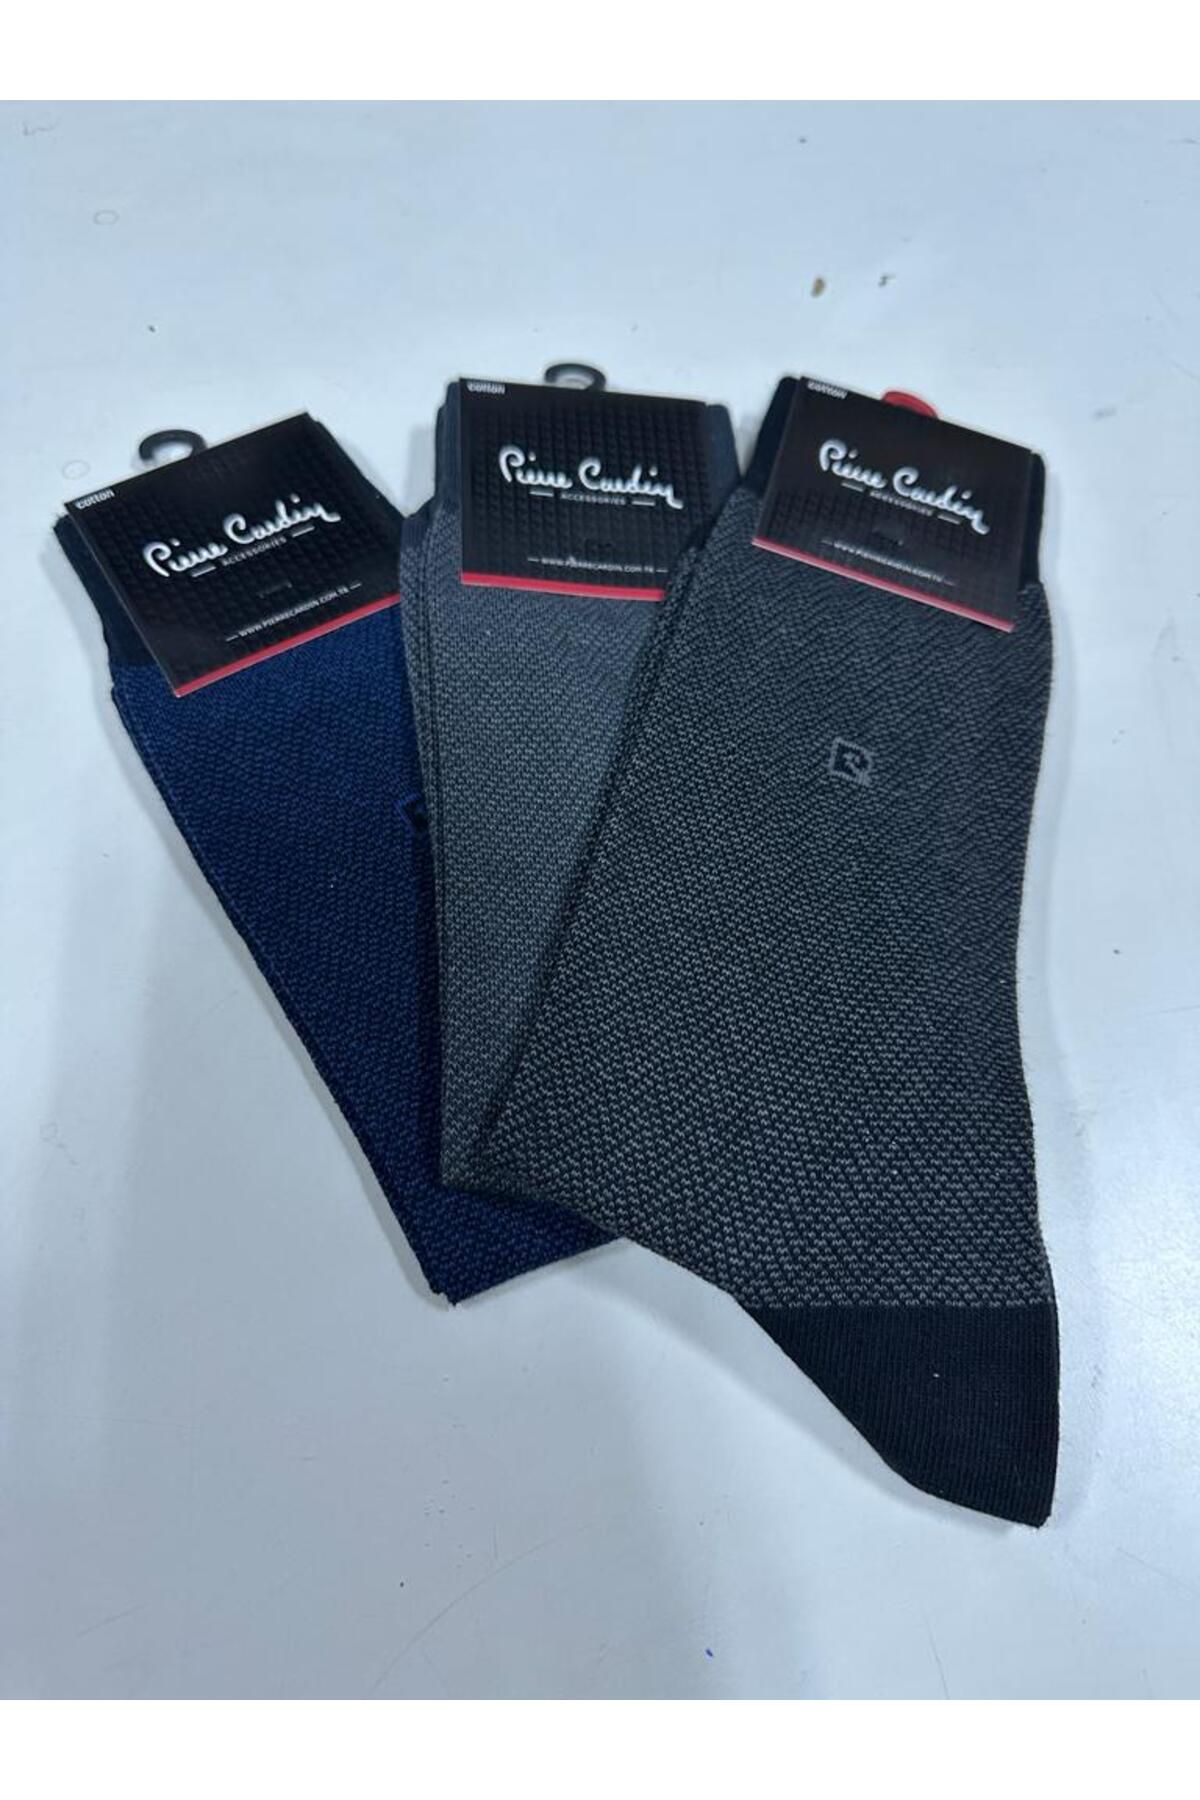 Pierre Cardin new 3 Lü flat pamuk yeni model erkek çorap